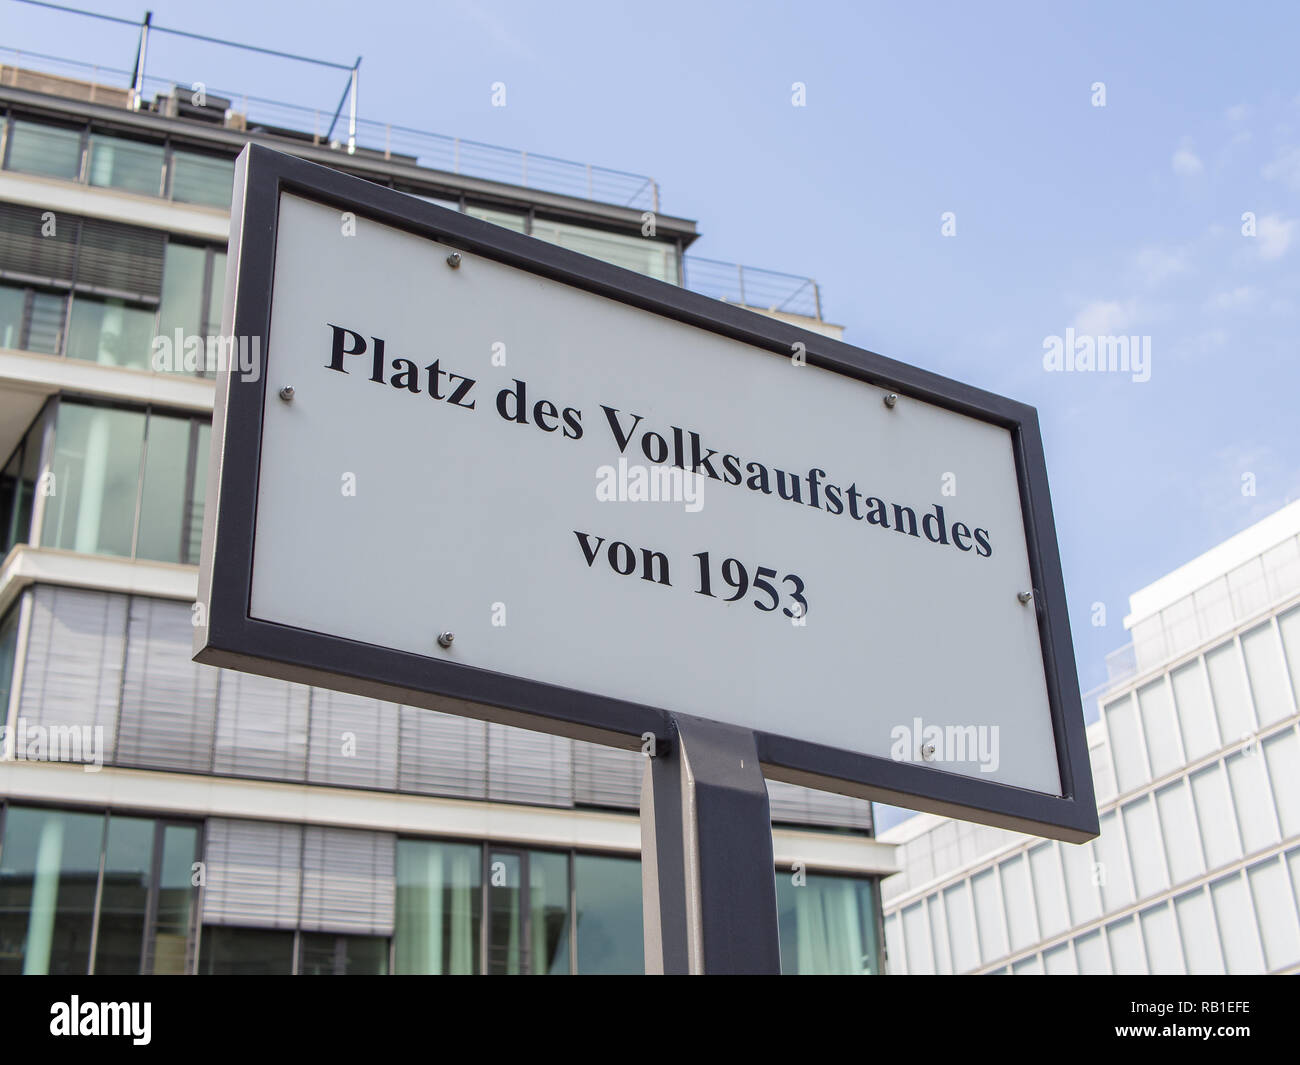 BERLIN, DEUTSCHLAND - 9. JULI 2017: Street Sign Platz des Volksaufstandes von 1953, d. h. Ort des Volksaufstandes von 1953 in deutscher Sprache, Berlin Stockfoto